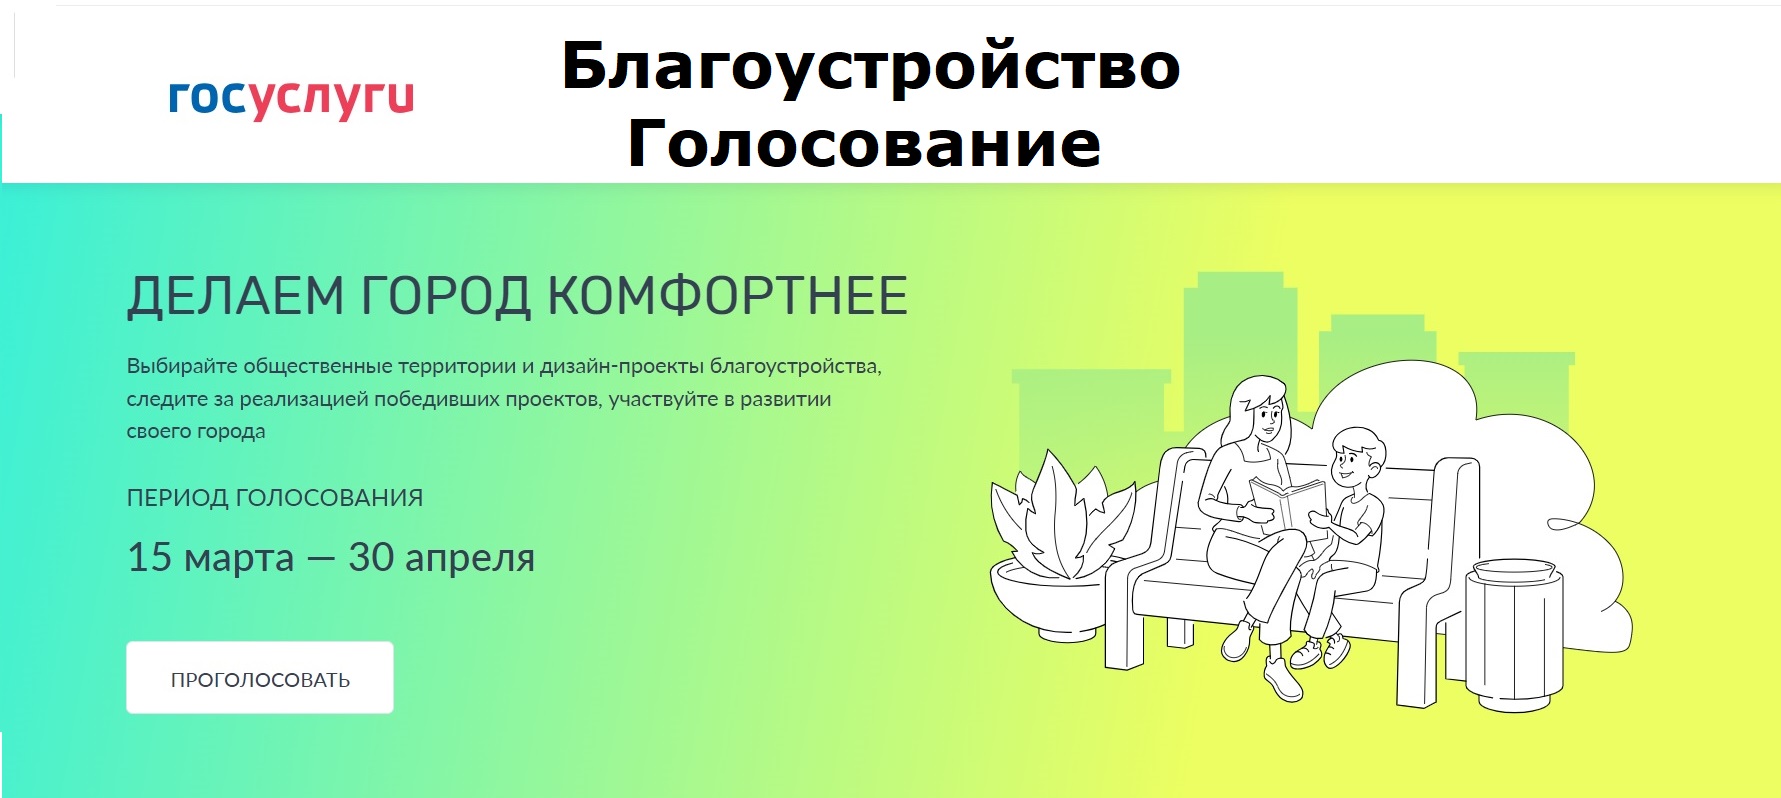 Всероссийское онлайн-голосование в Госуслугах по выбору объектов благоустройства до 30 апреля